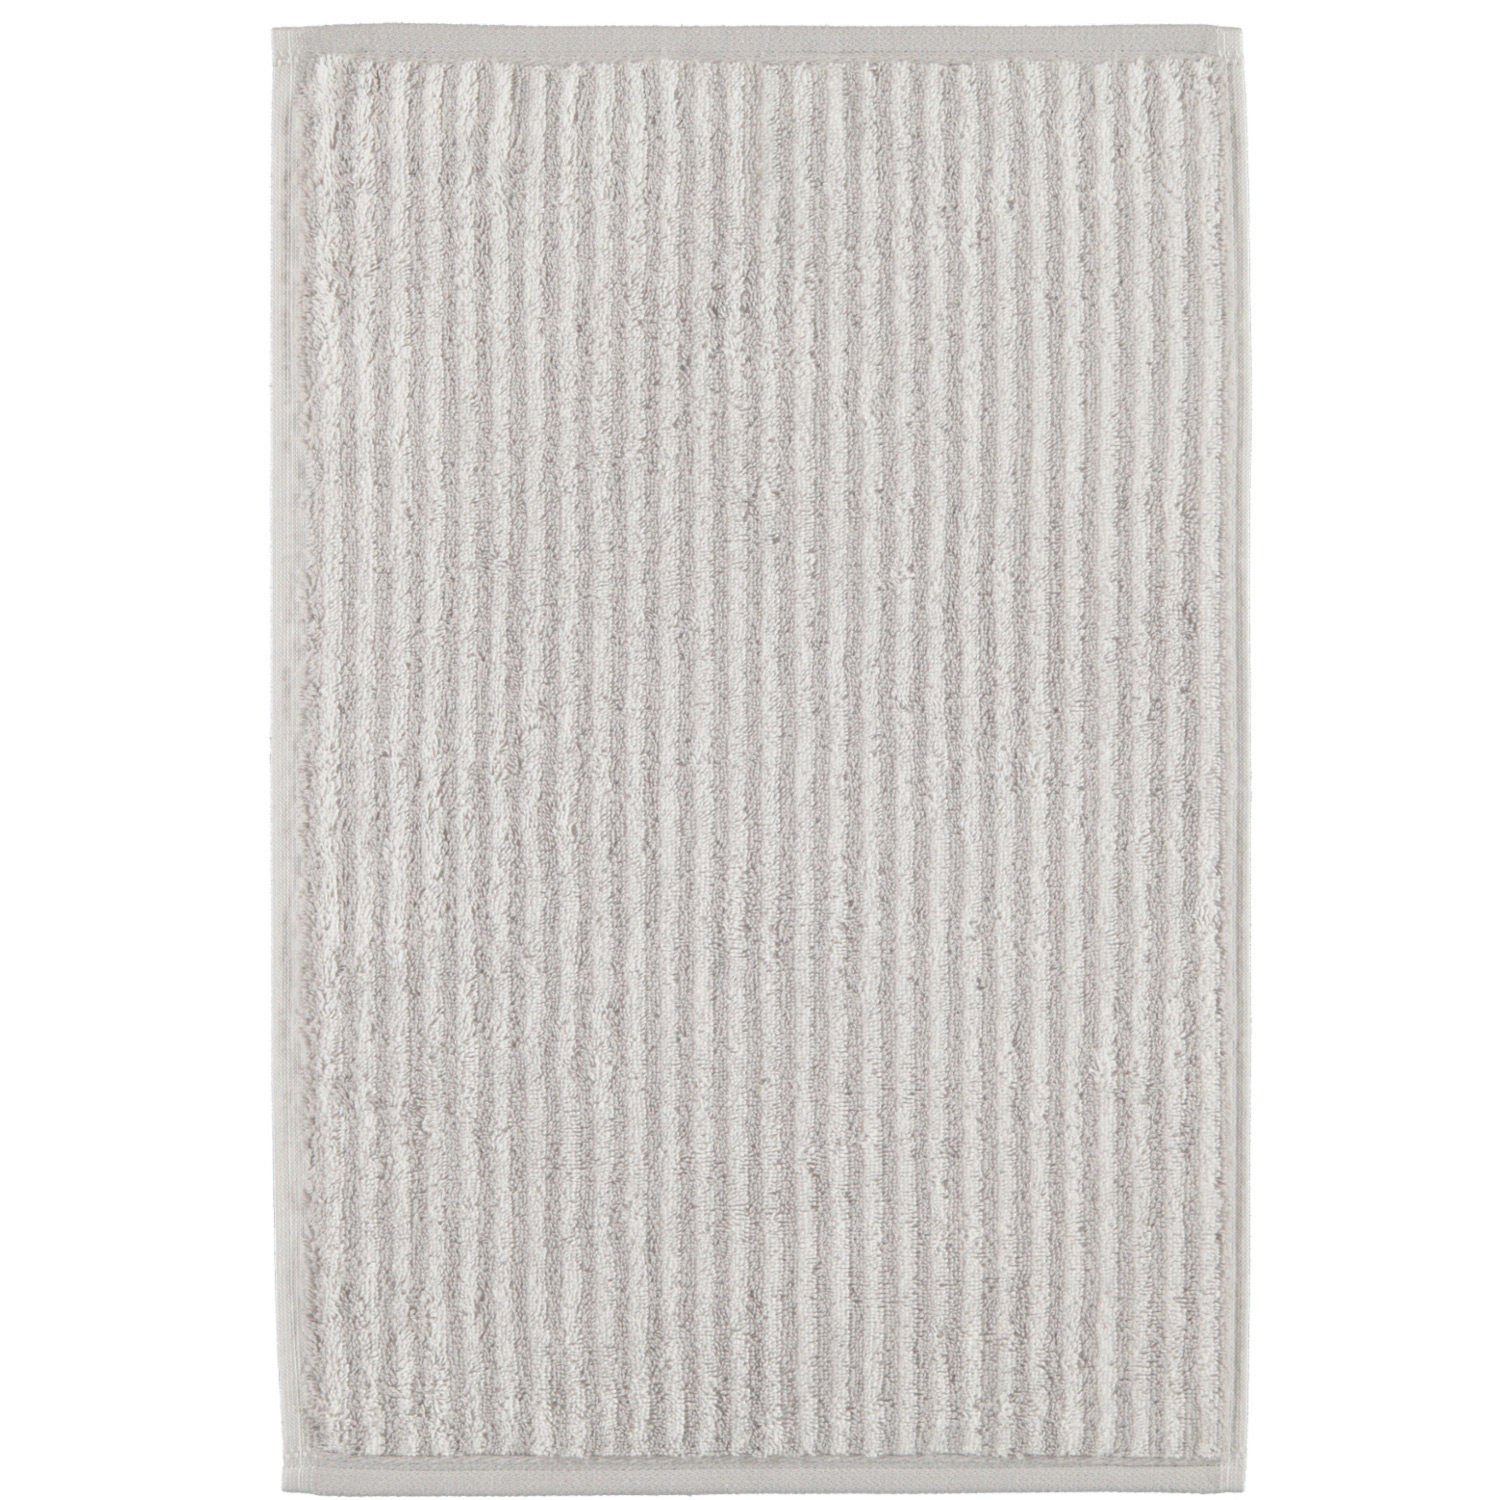 Полотенце CAWO Stripes белое с серым 30х50 см